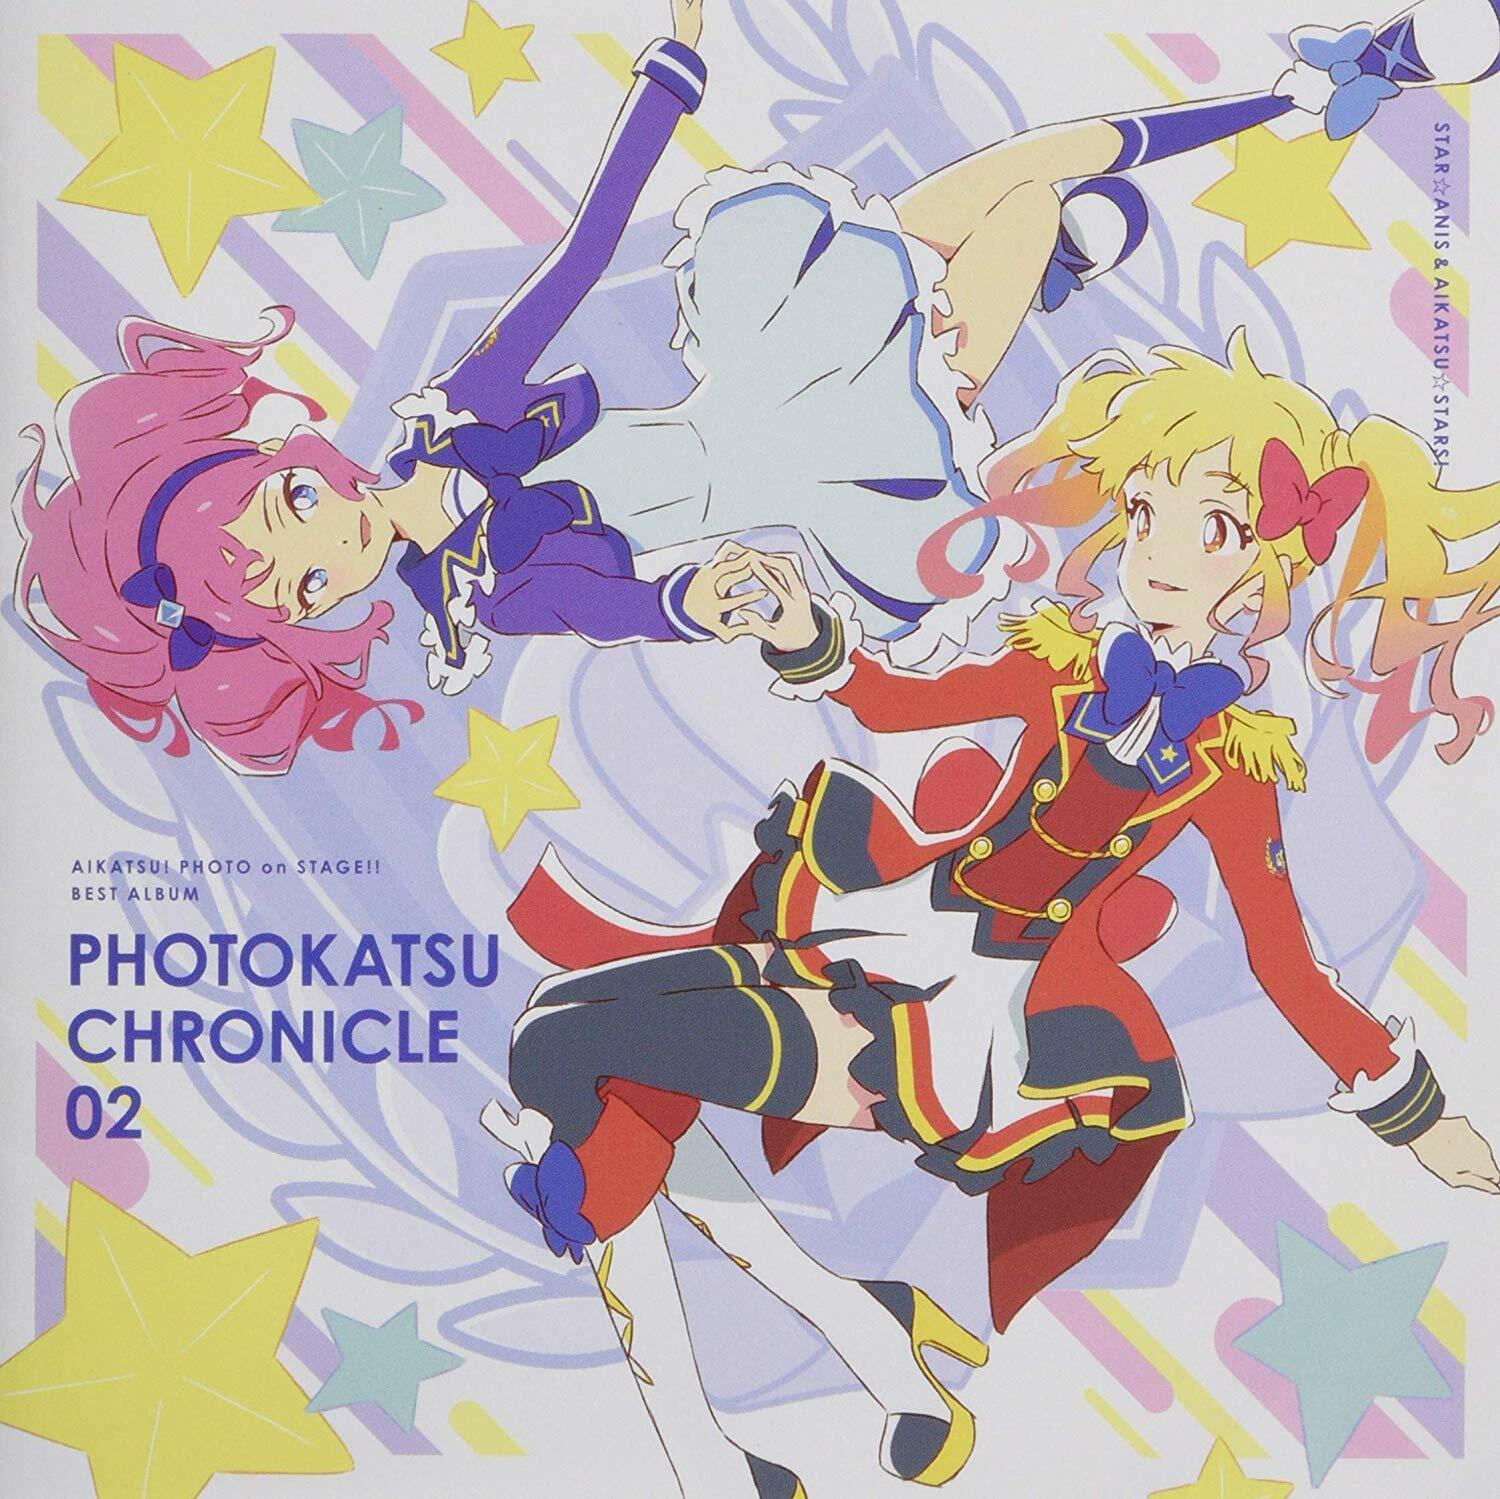 スマホアプリ『アイカツ!フォトonステ-ジ!!』ベストアルバム PHOTOKATSU CHRONICLE 02 (CD)